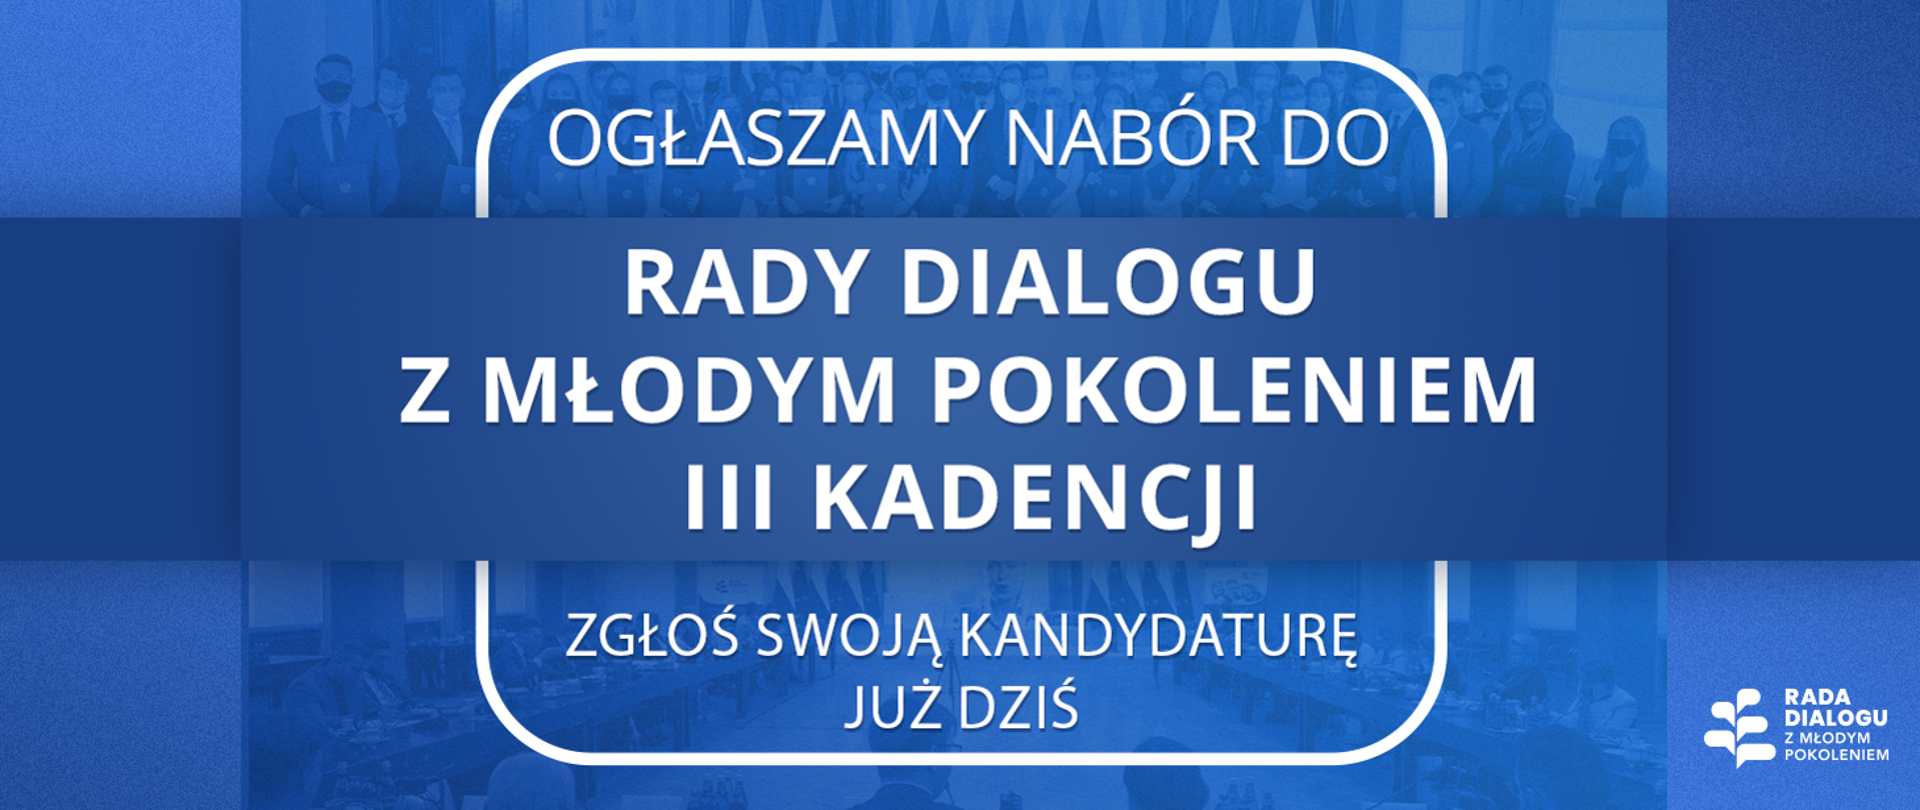 Plakat promujący nabór do Rady Dialogu z Młodym Pokoleniem III kadencji 